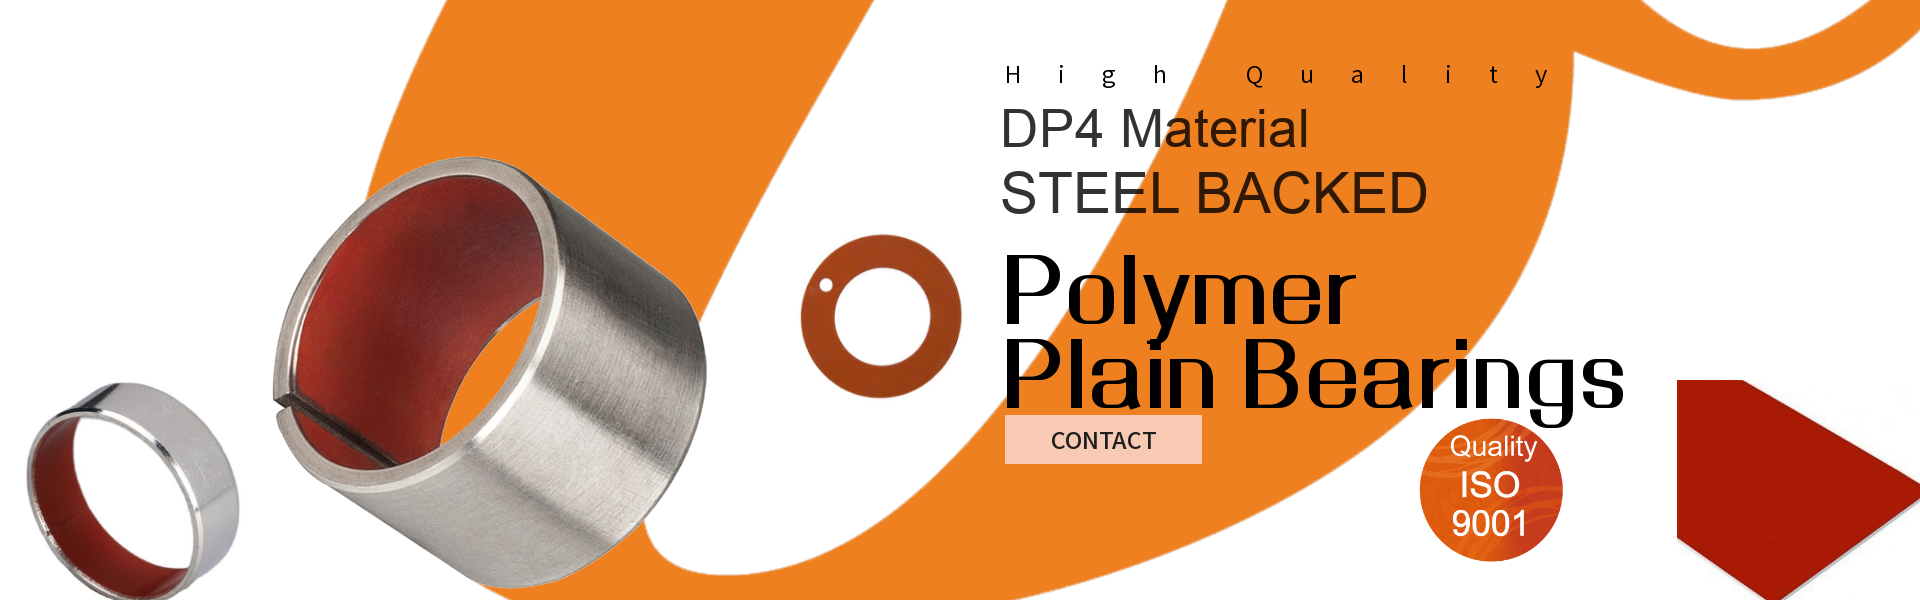 DP4 Polymer Plain Bearings